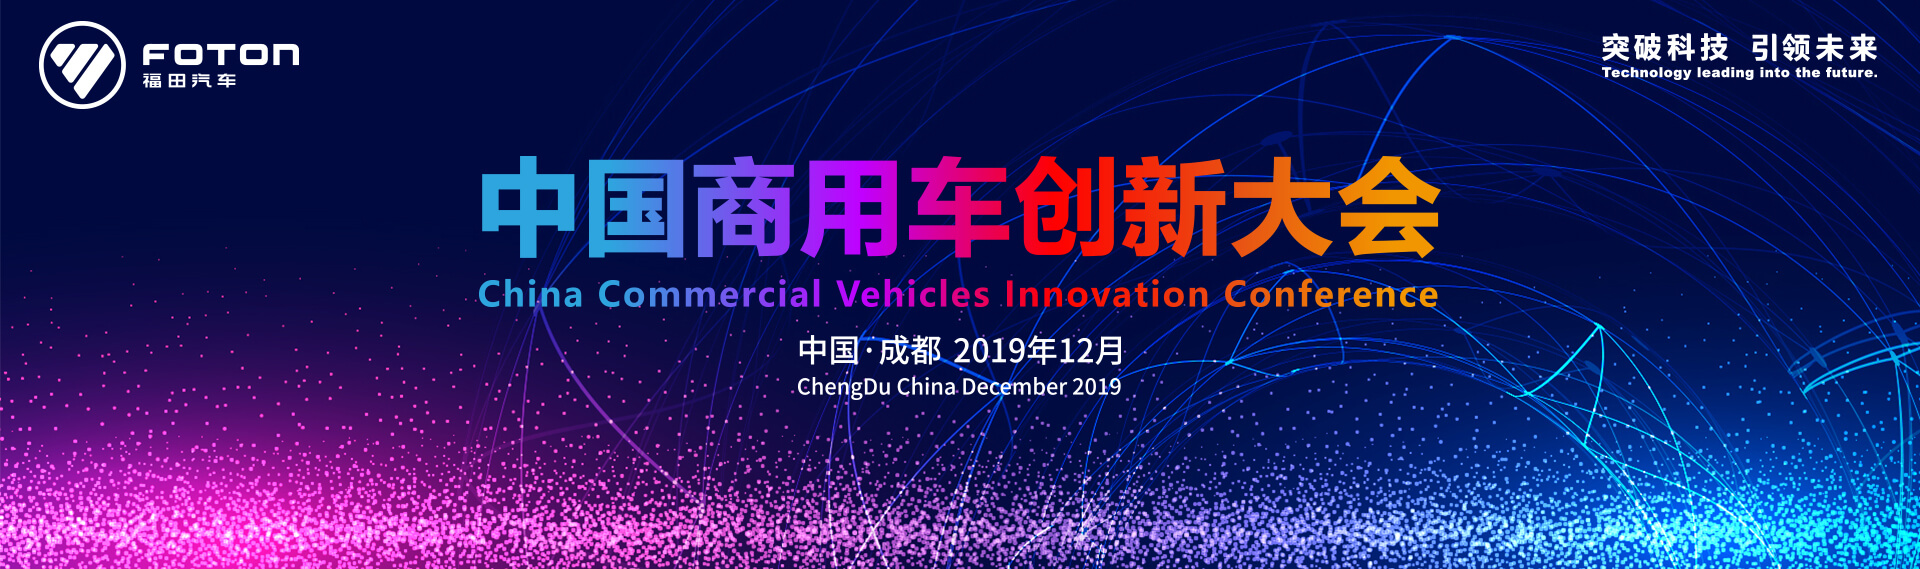 “聚焦价值 精益运营” 中国商用车创新大会